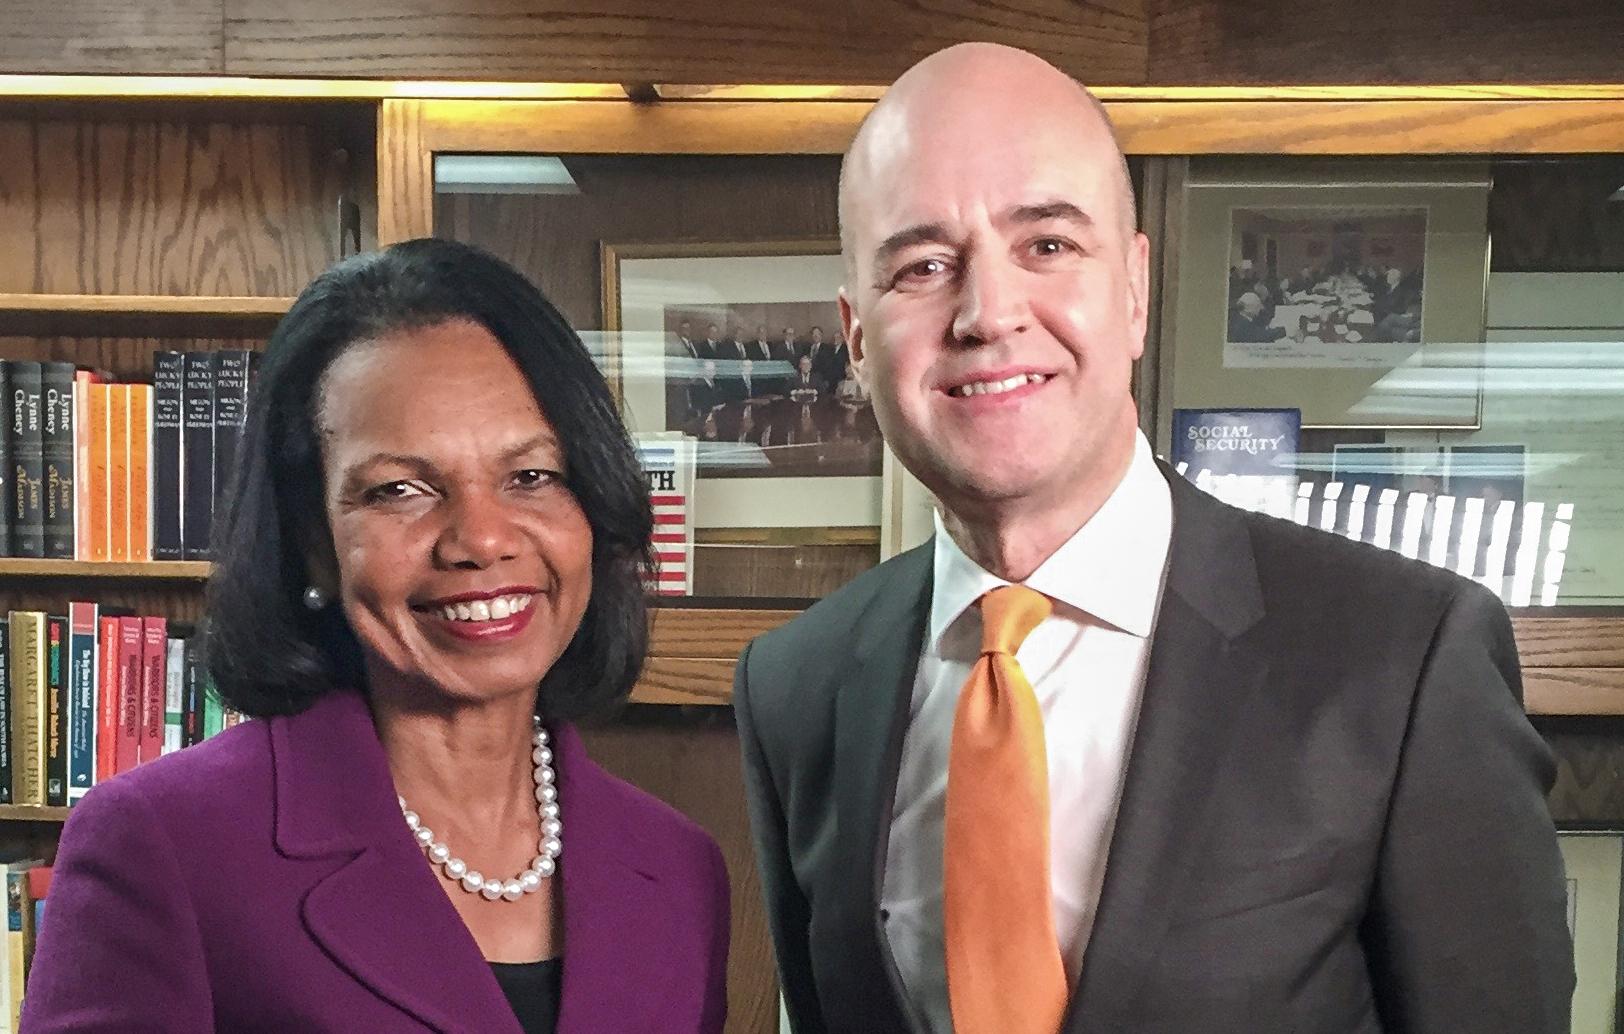 Sveriges förra statsminister Fredrik Reinfeldt samtalar med Condoleezza Rice, USA:s utrikesminister 2005-2009.